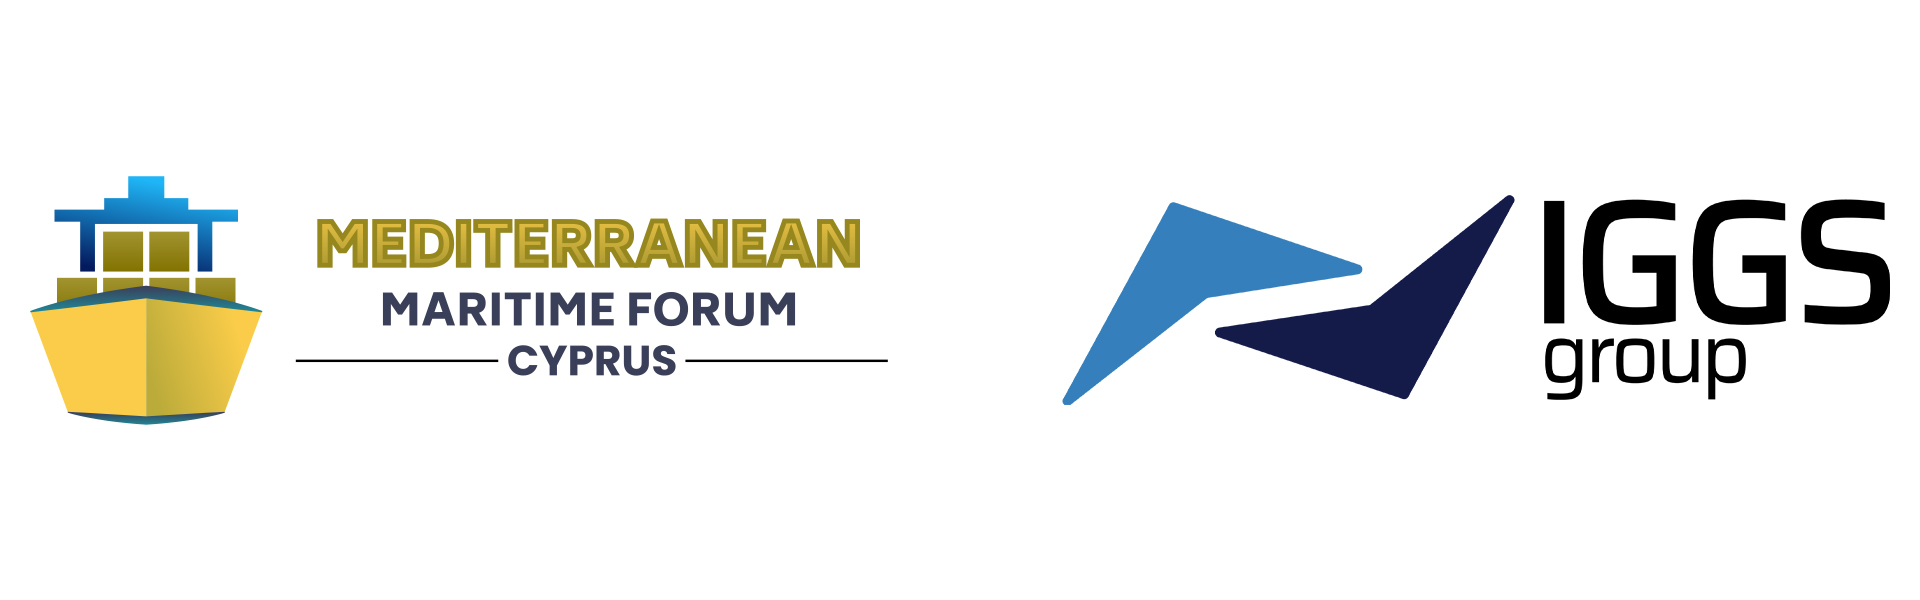 Mediterranean Maritime Forum logo